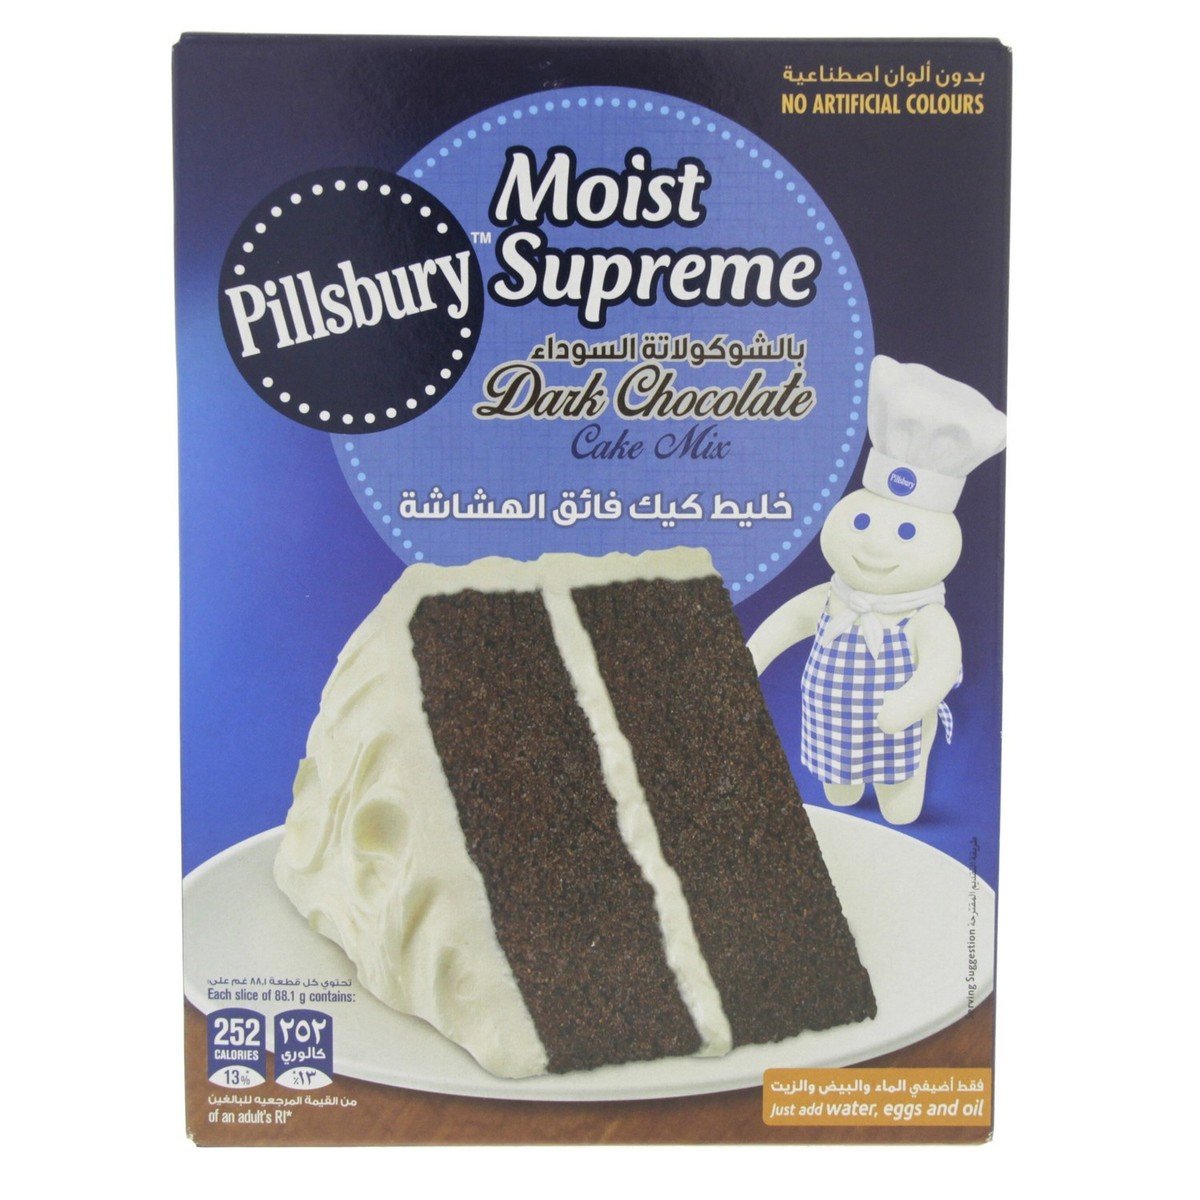 Pillsburry Moist Supreme Cake Mix Dark Chocolate 485 g